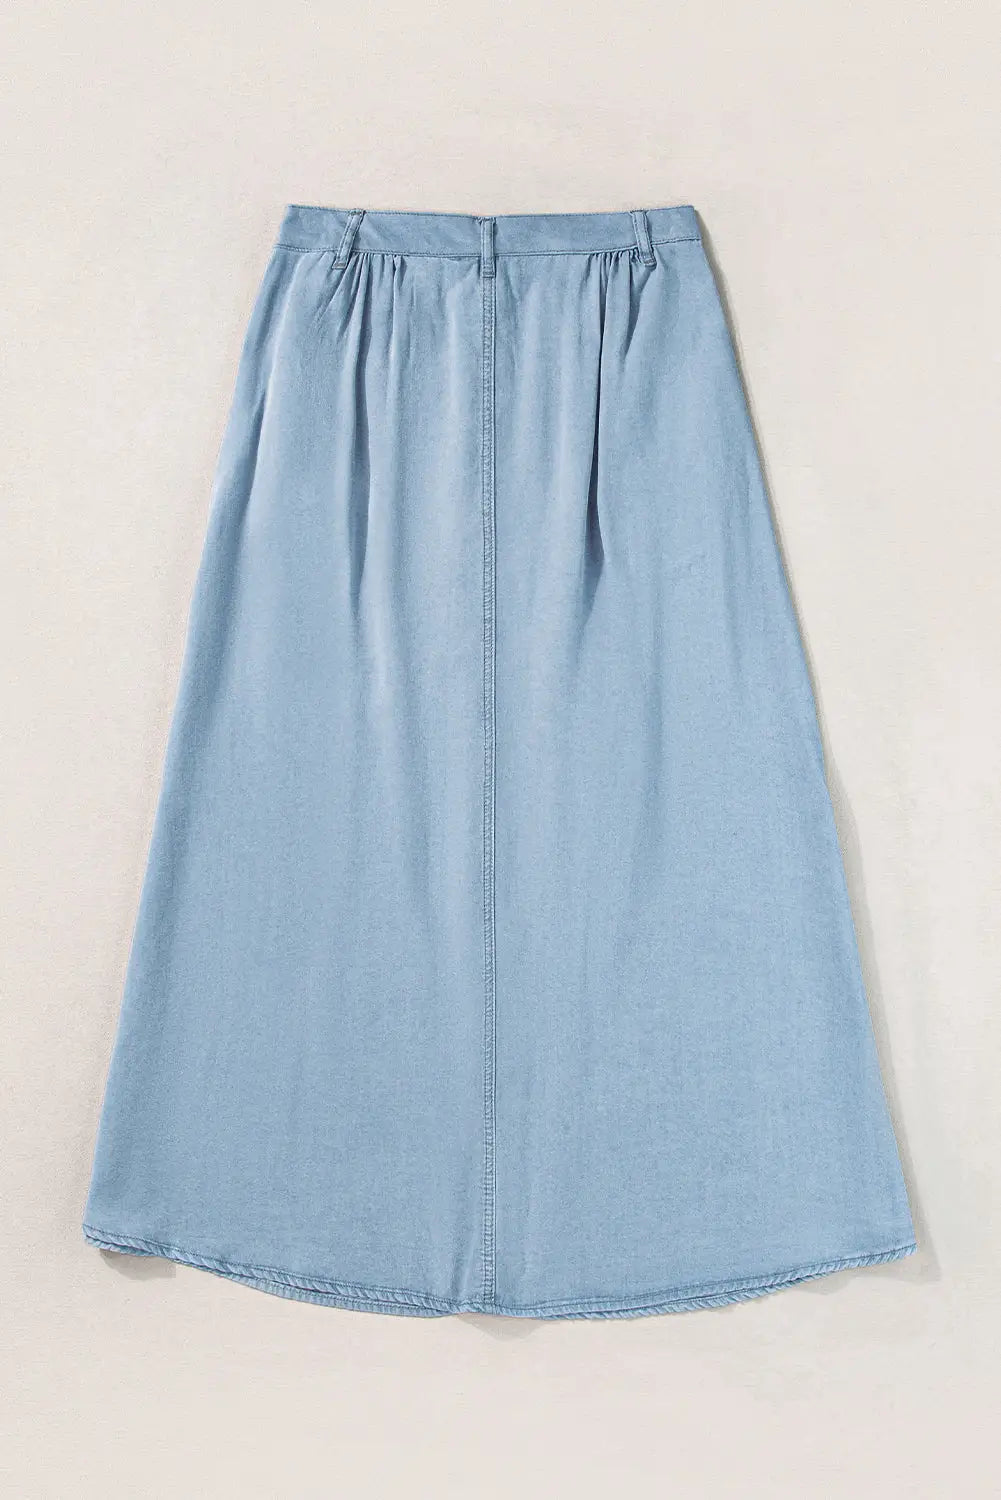 Mist blue fully buttoned long denim skirt - bottoms/skirts & petticoat